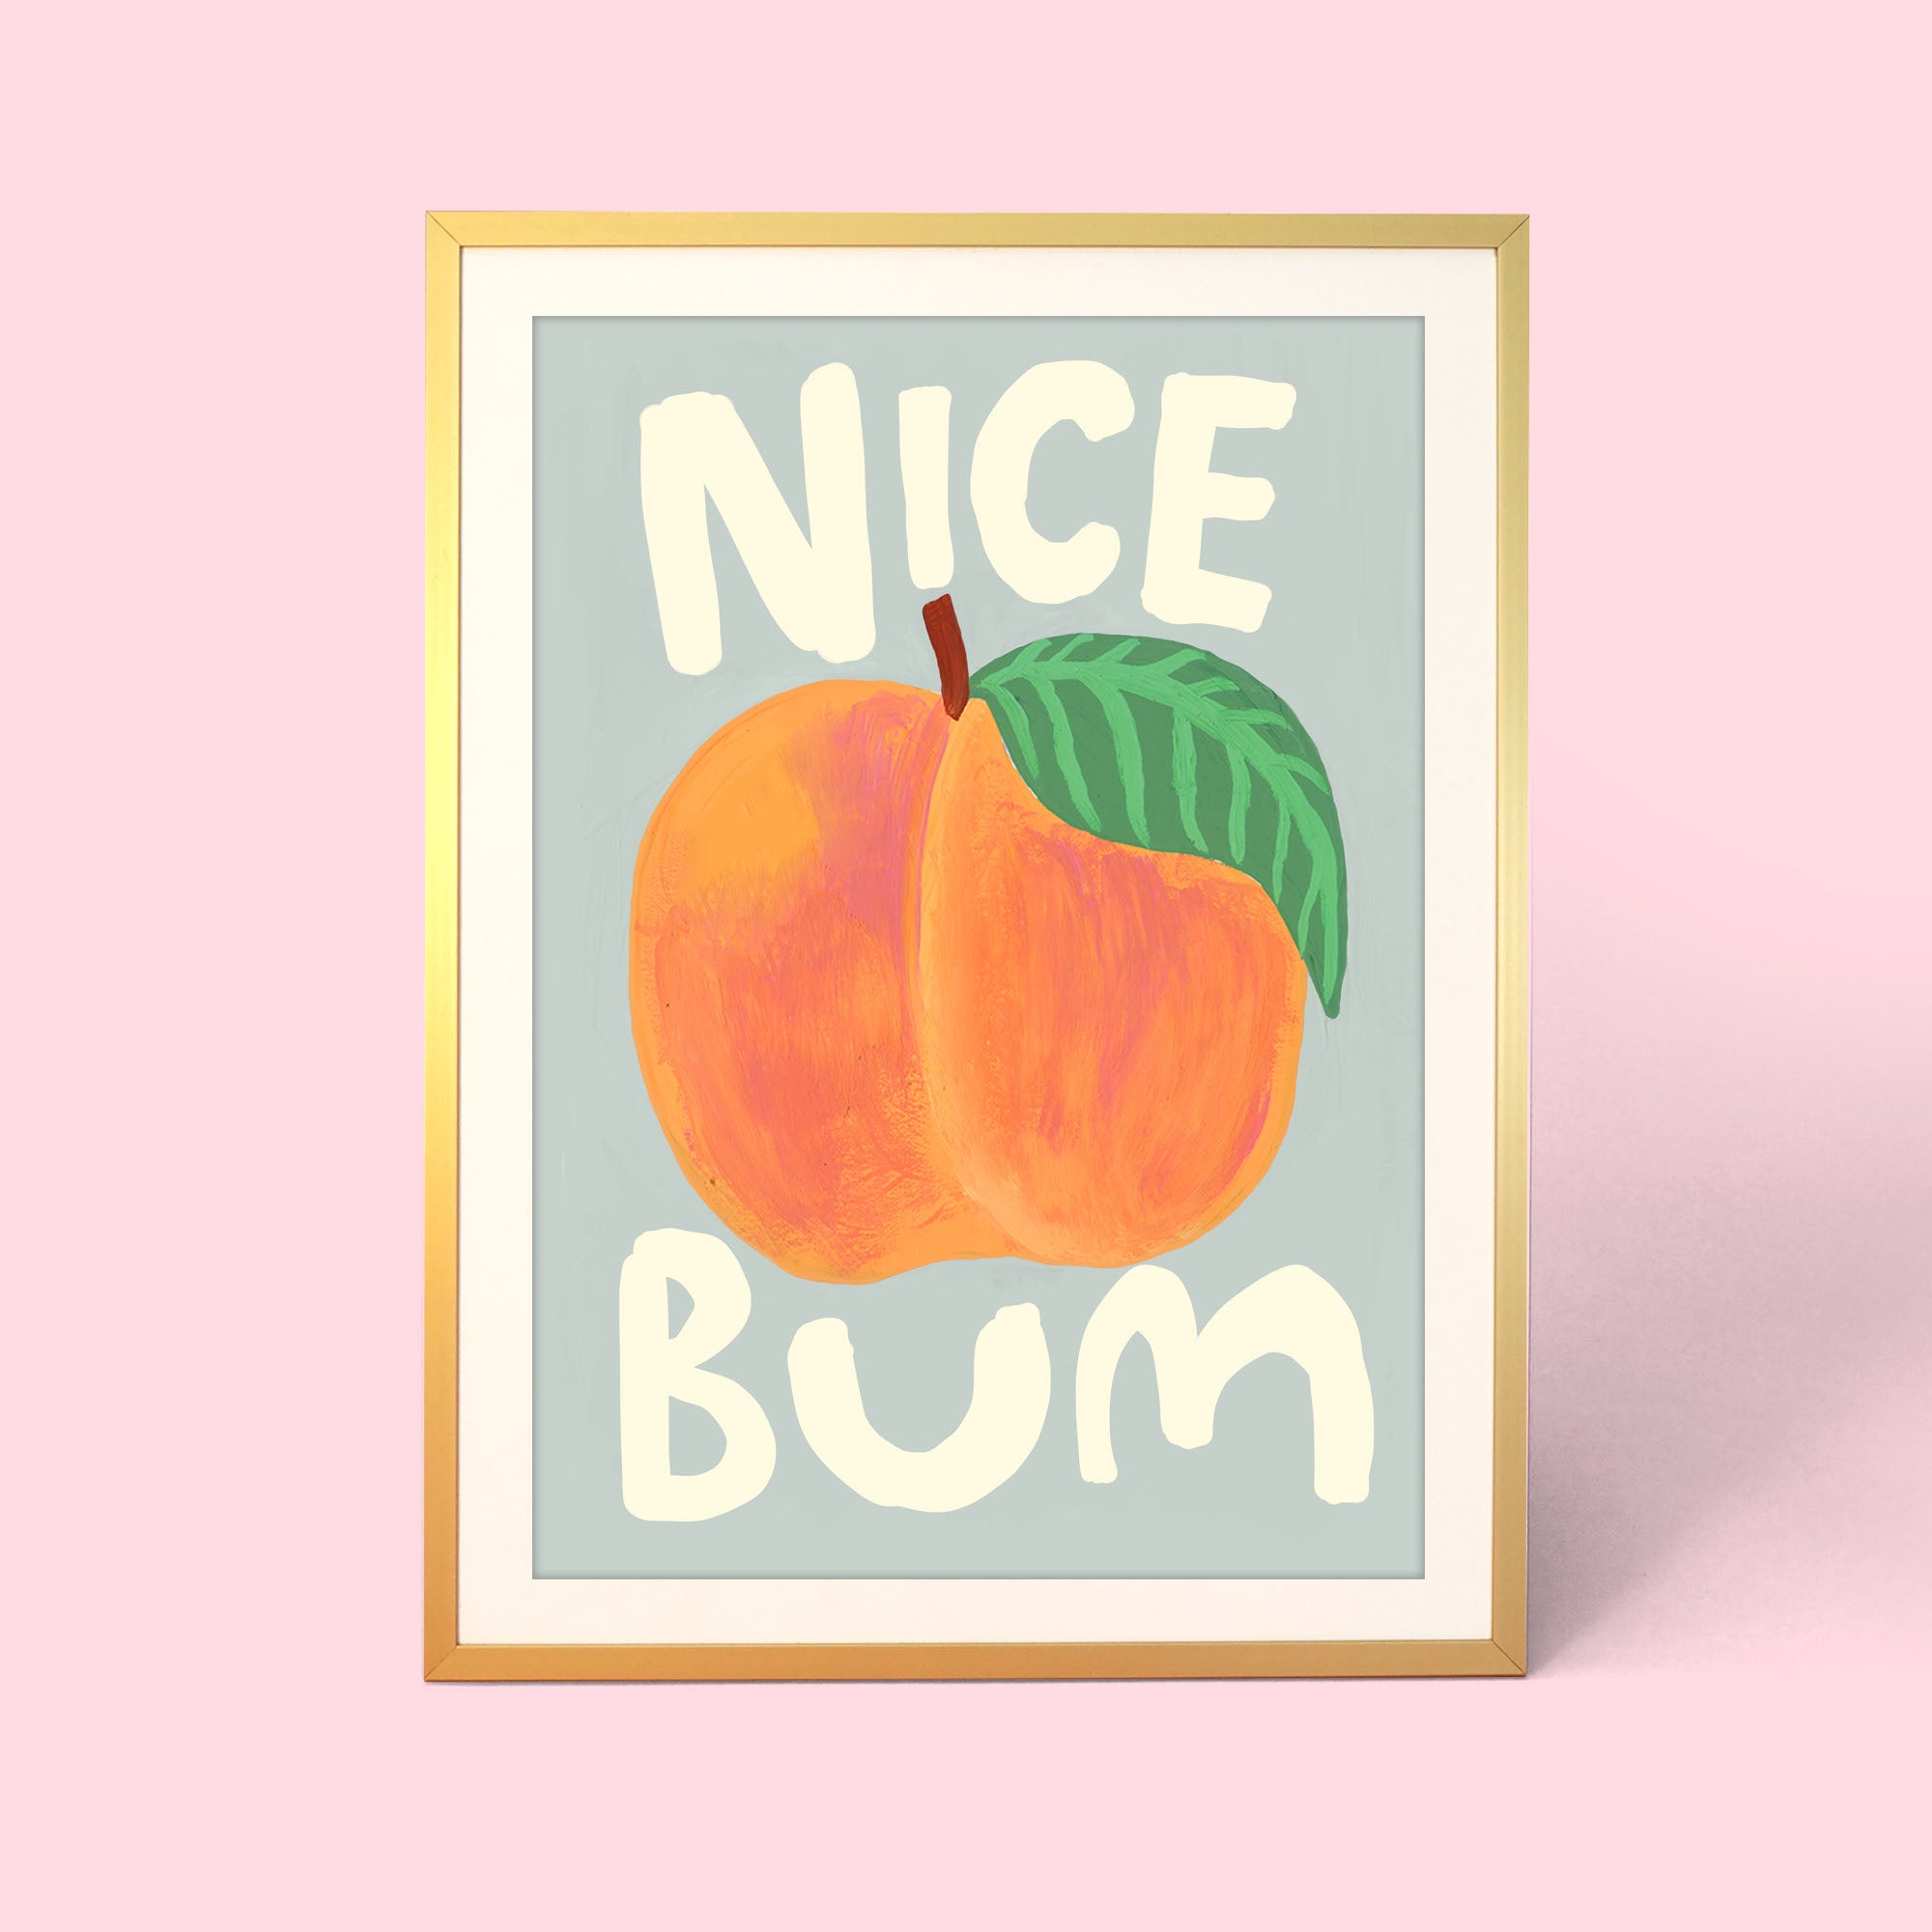 Peach Bum